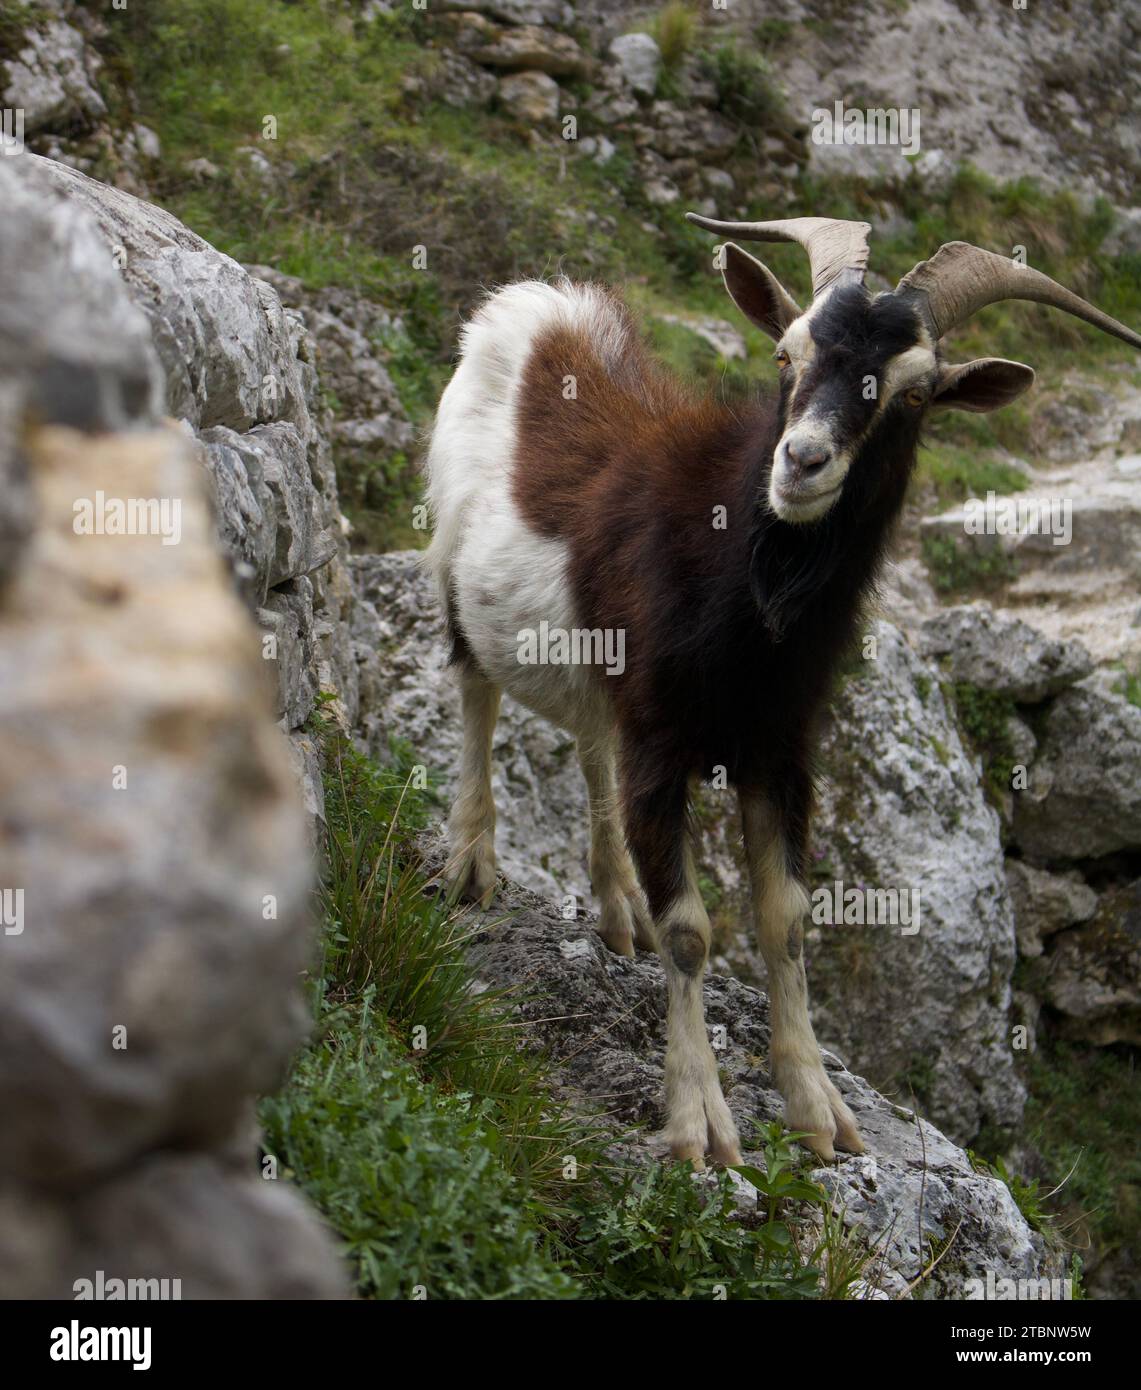 Imagen en la que una cabra marrón y blanca posa con elegancia, fusionándose armoniosamente con el espectacular paisaje montañoso. Stock Photo